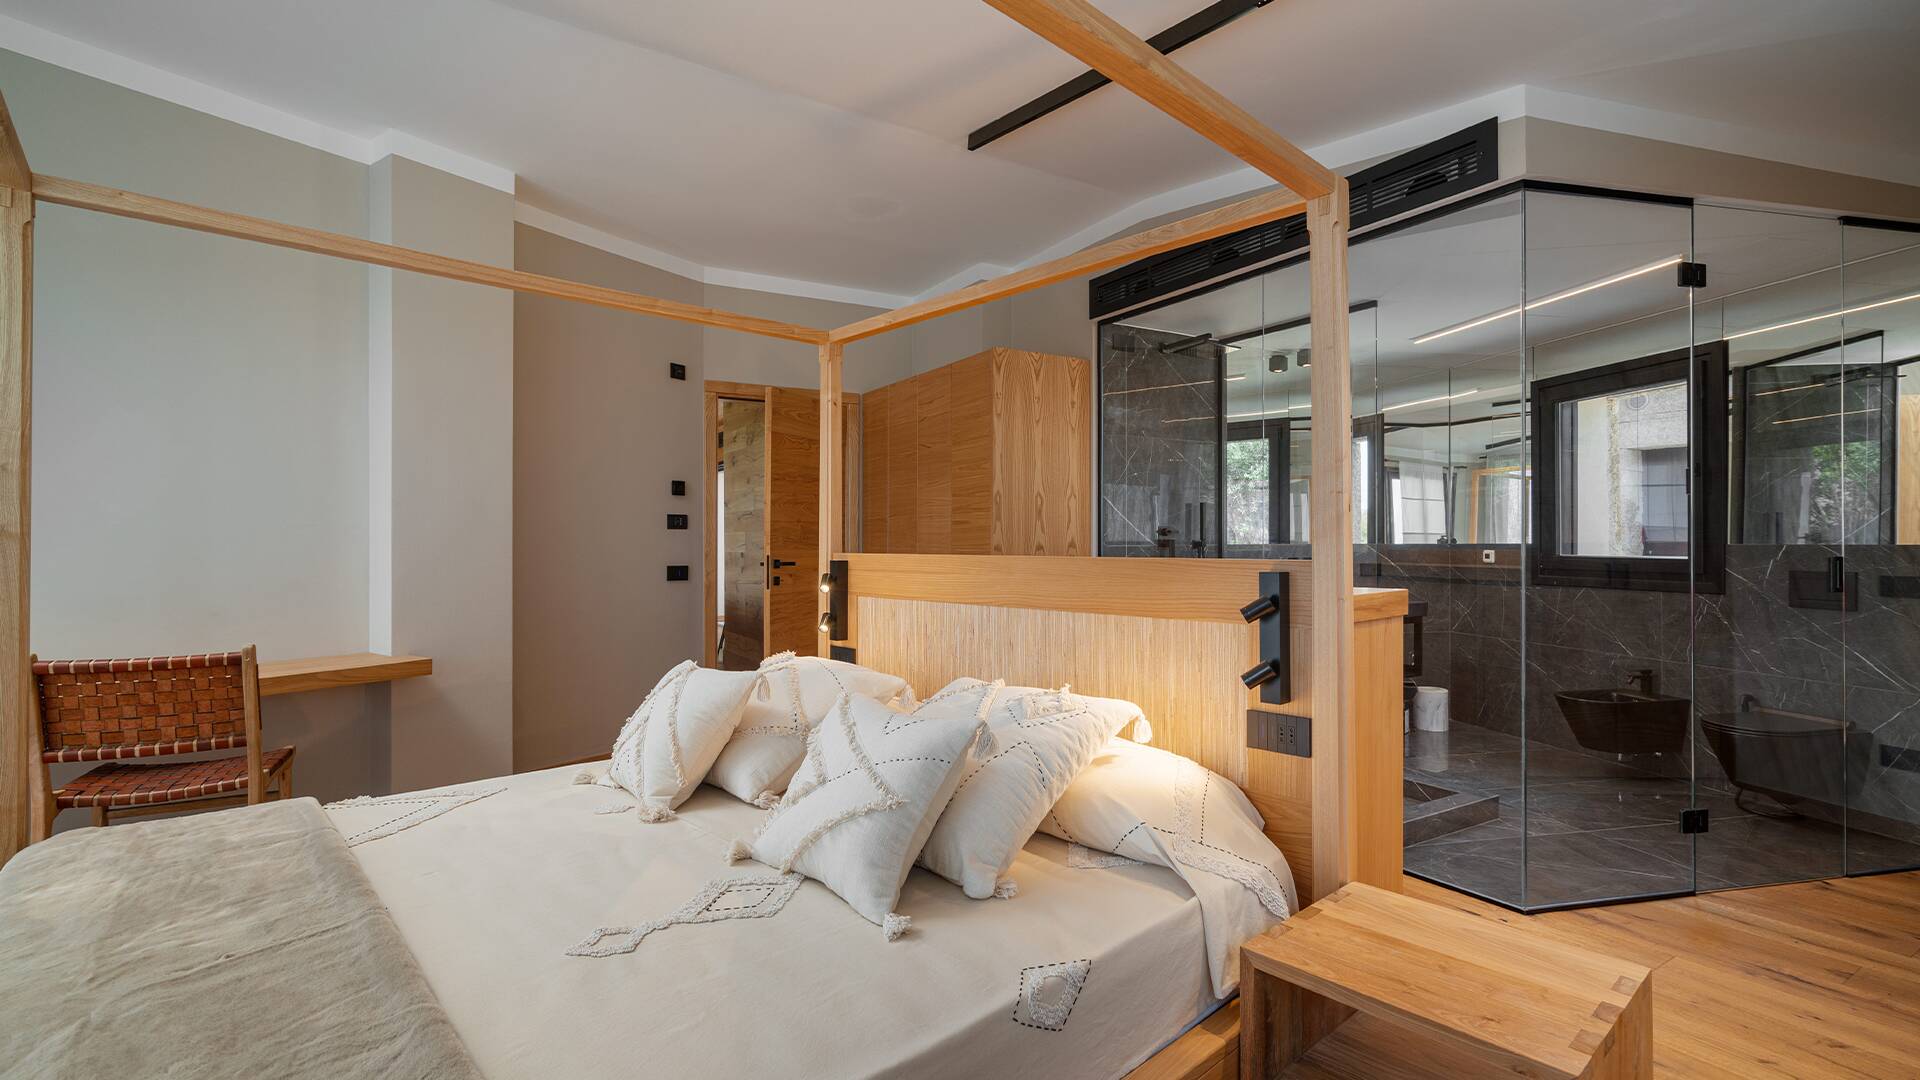 luxury double bedroom with en suite bathroom with glass walls